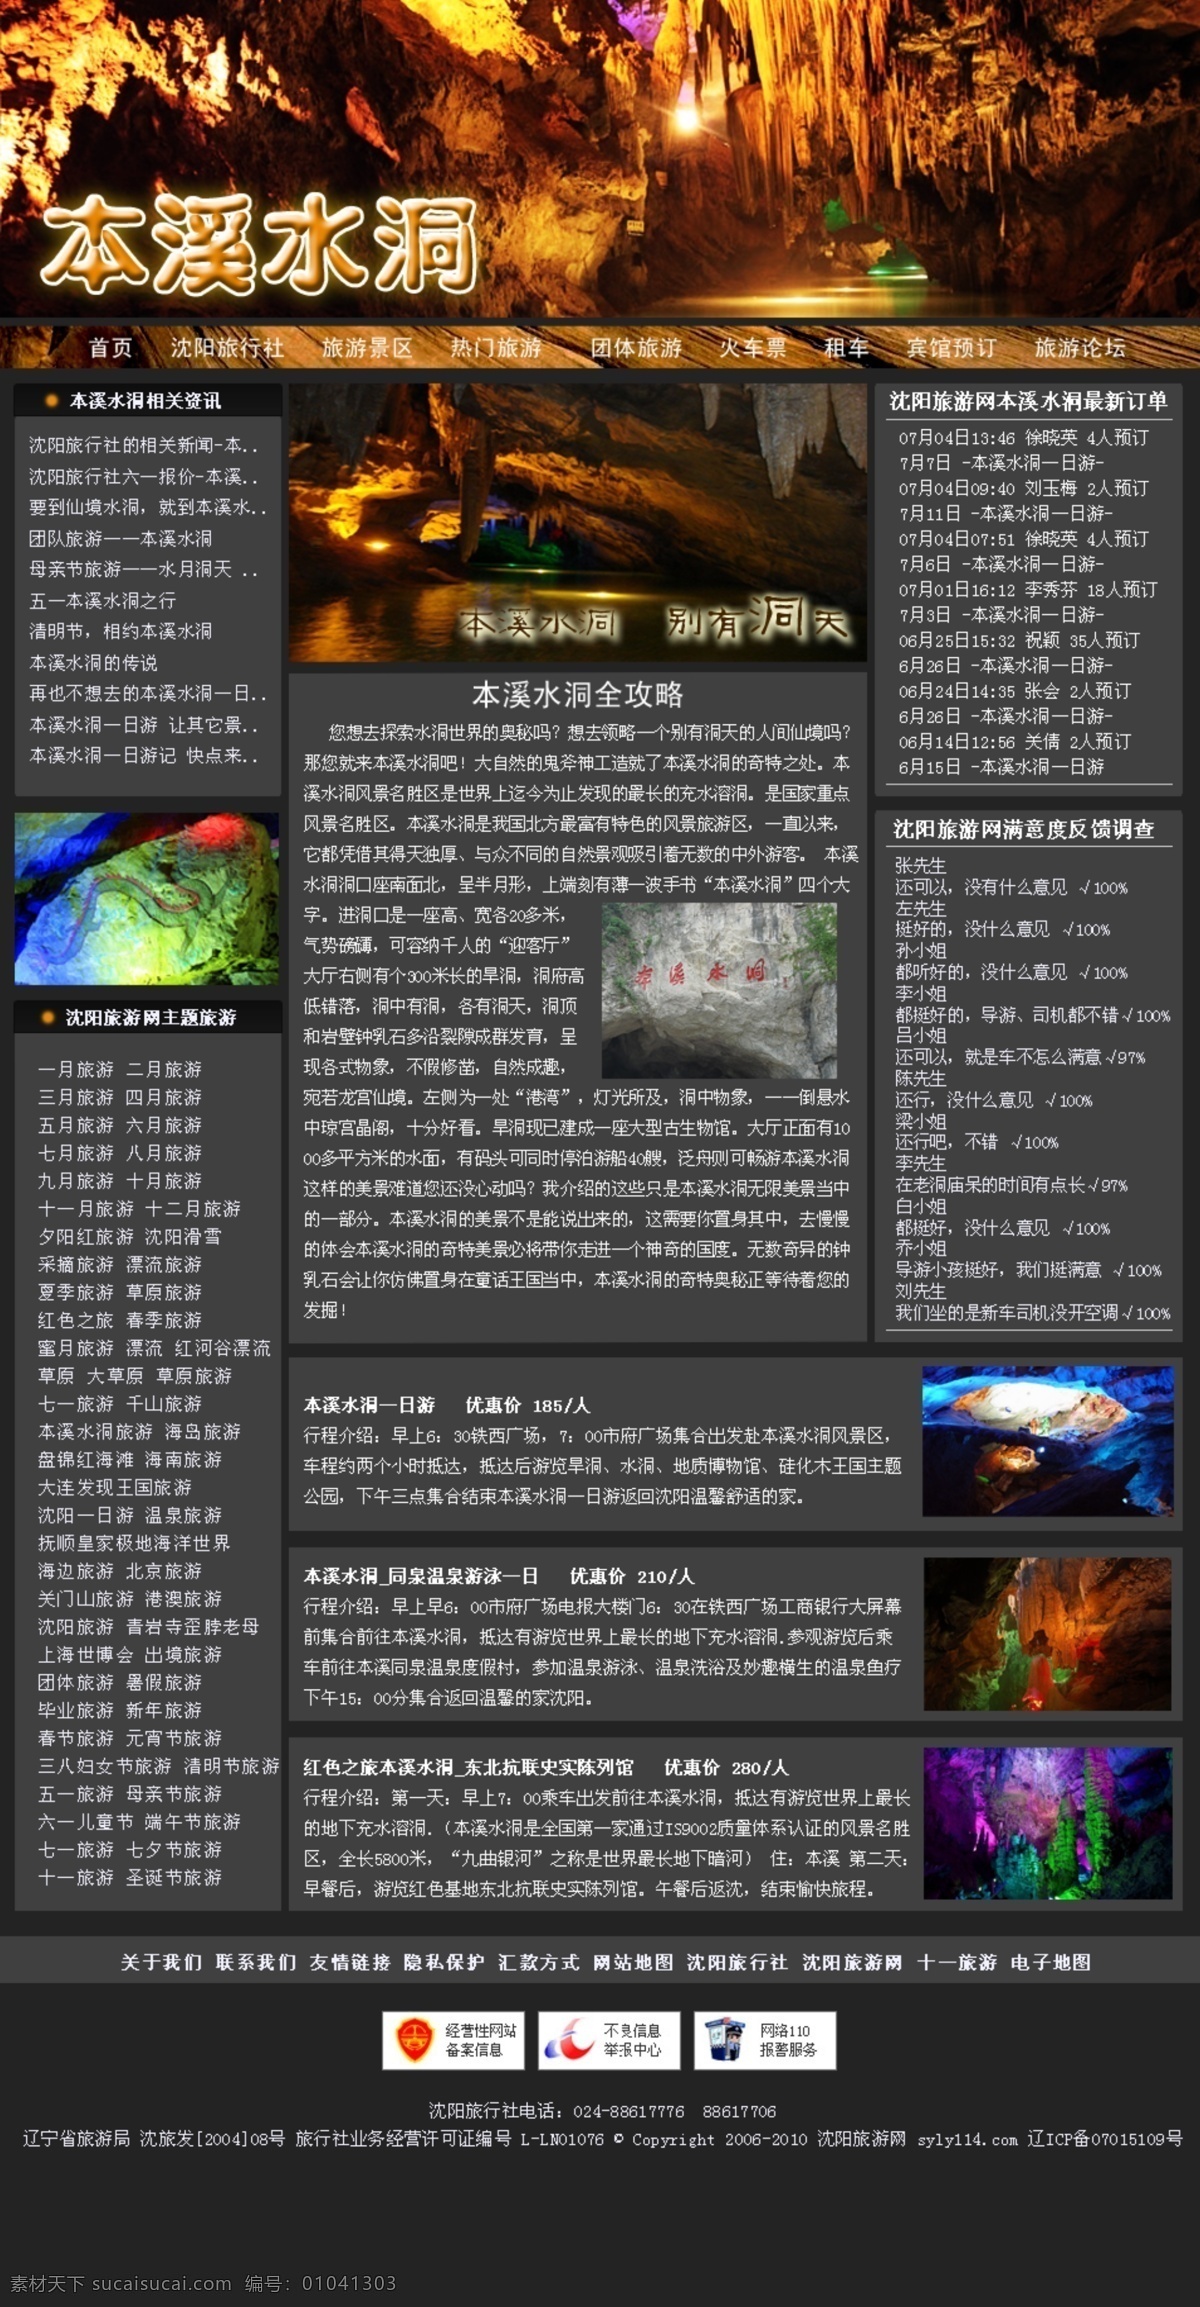 旅游网站 本溪 水洞 主题 页 本溪水洞 中文模版 网页模板 源文件